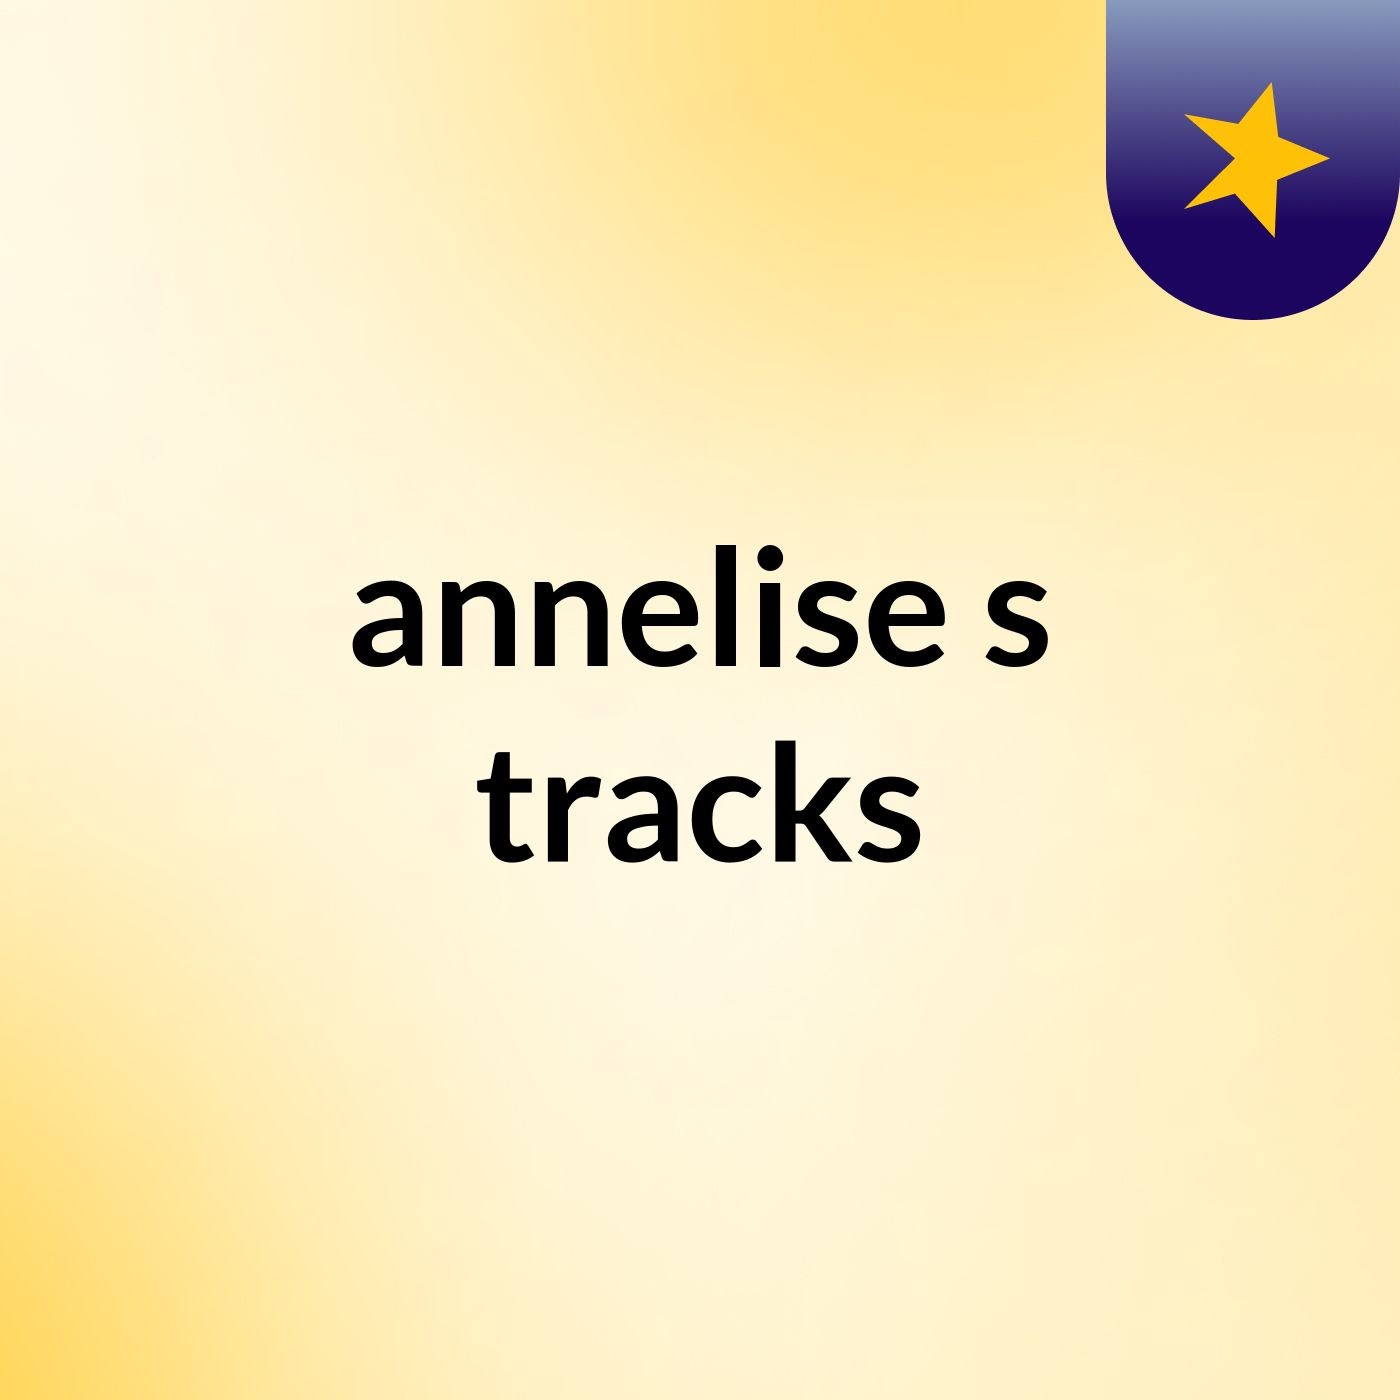 annelise's tracks